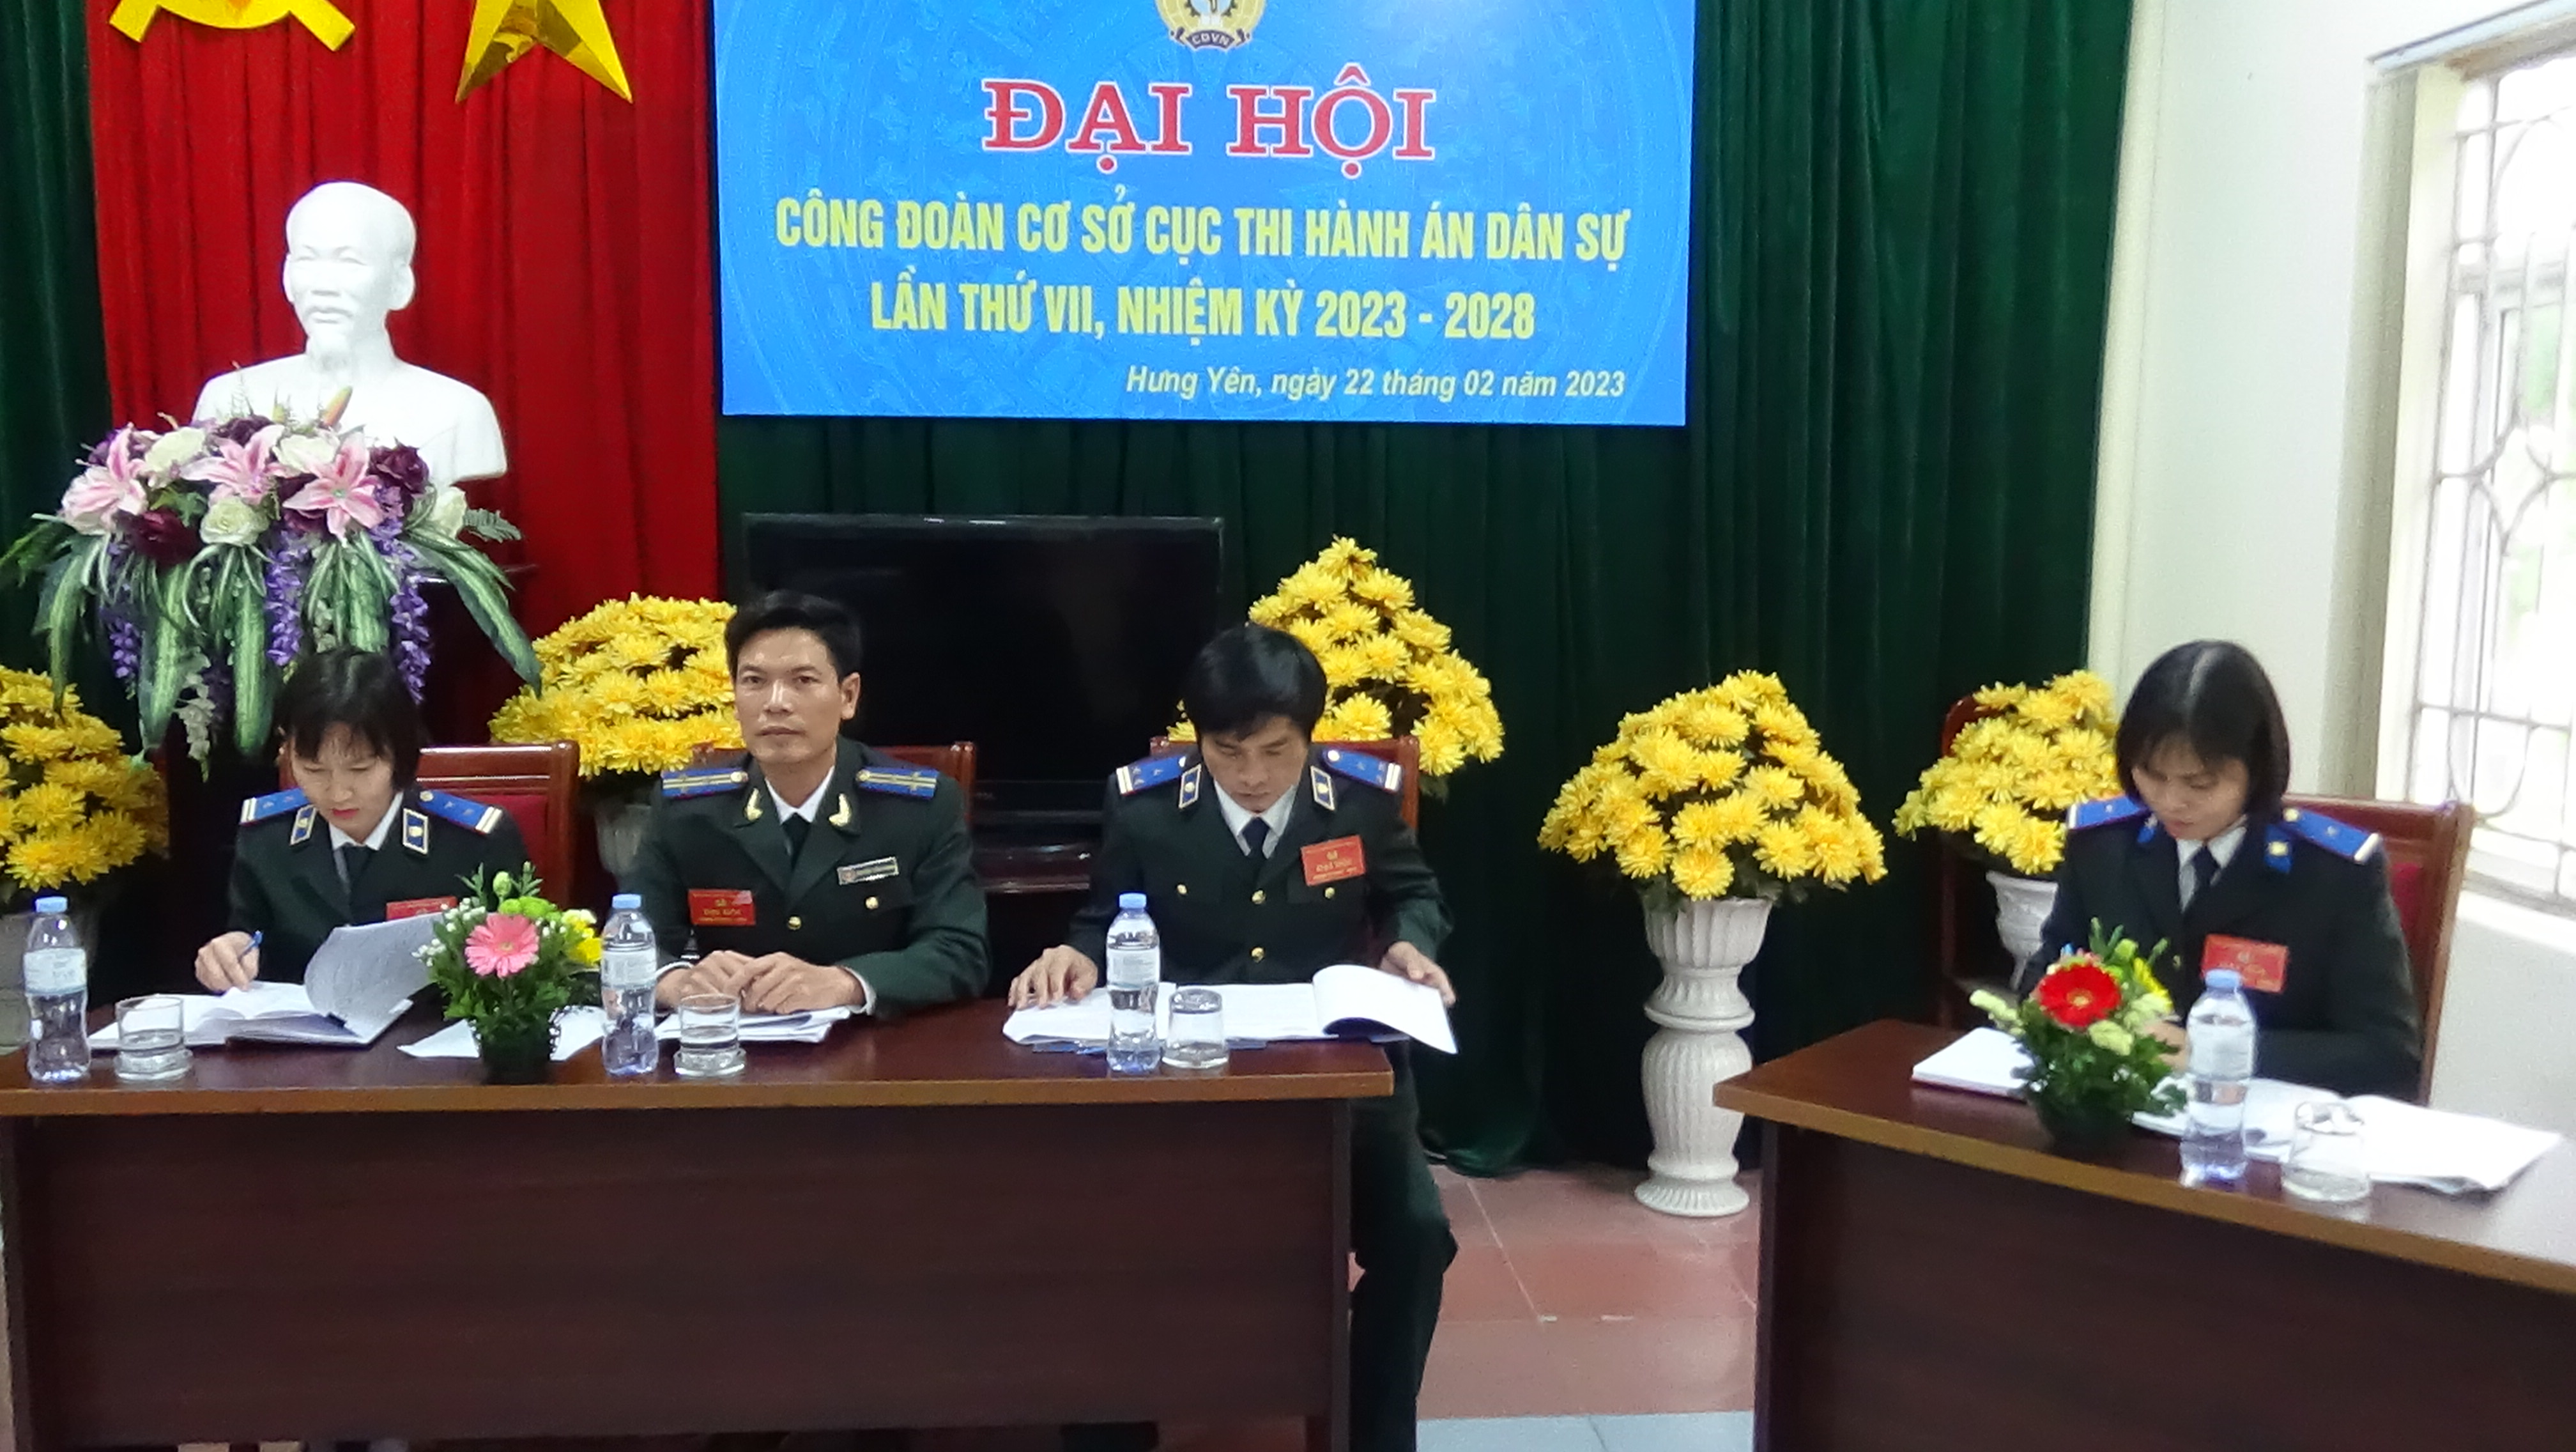 Công đoàn cơ sở Cục Thi hành án dân sự tỉnh Hưng Yên tổ chức Đại hội lần thứ VII, nhiệm kỳ 2023-2028